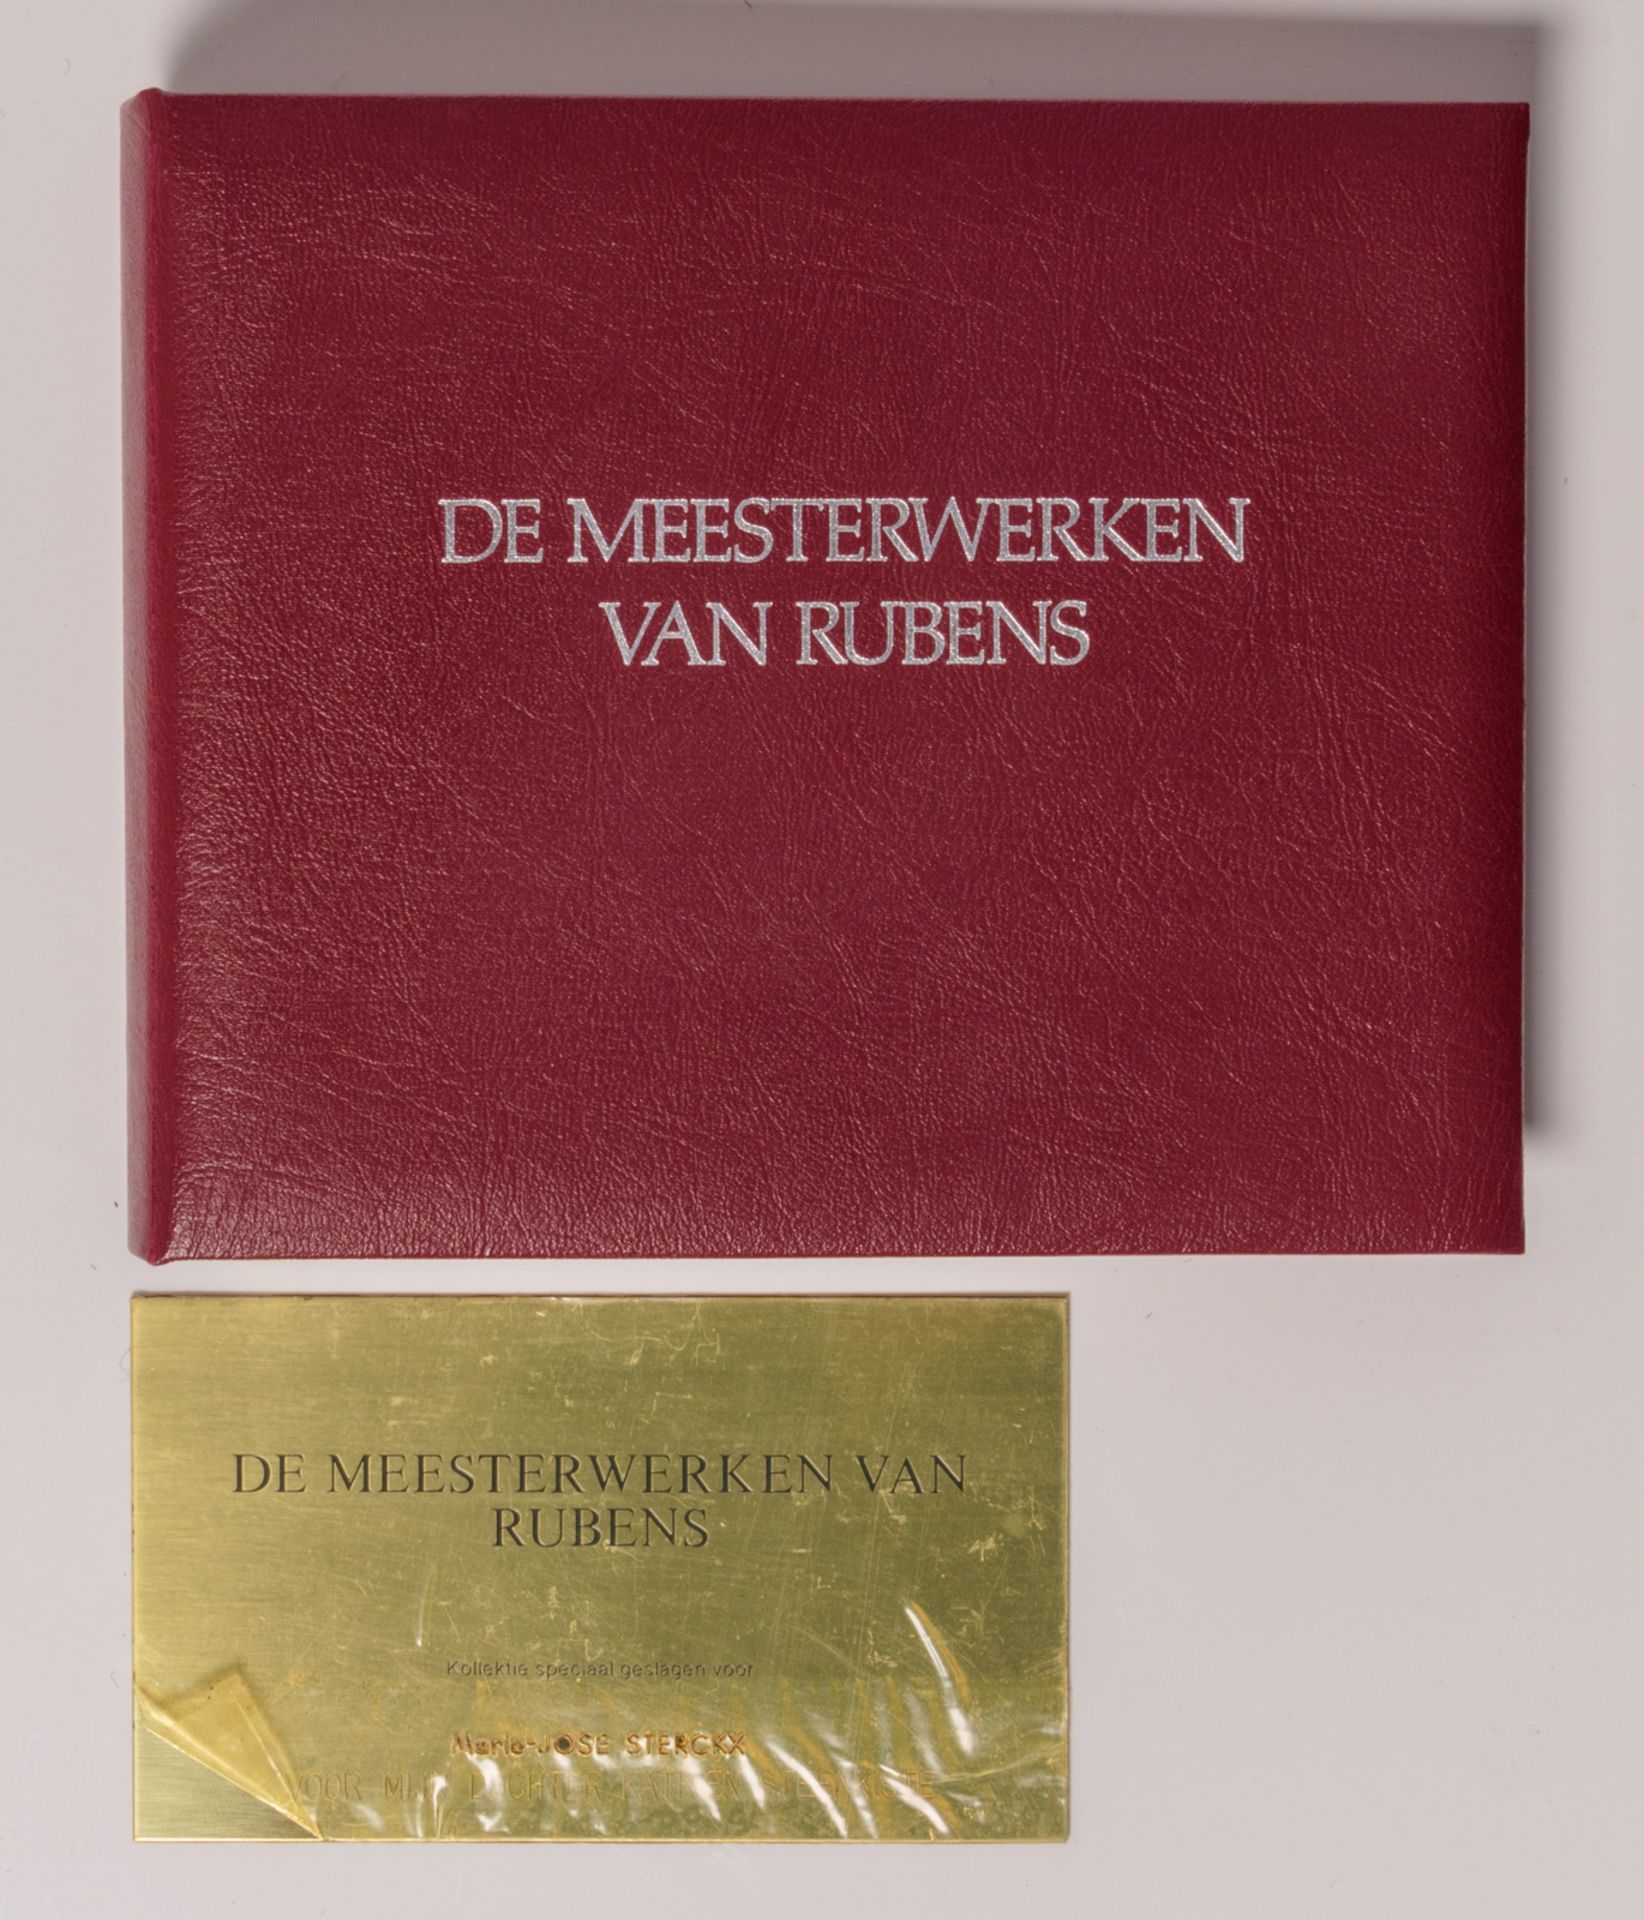 'De meesterwerken van Rubens' (The masterpieces of Rubens), the original box with one hundred silver - Bild 2 aus 12